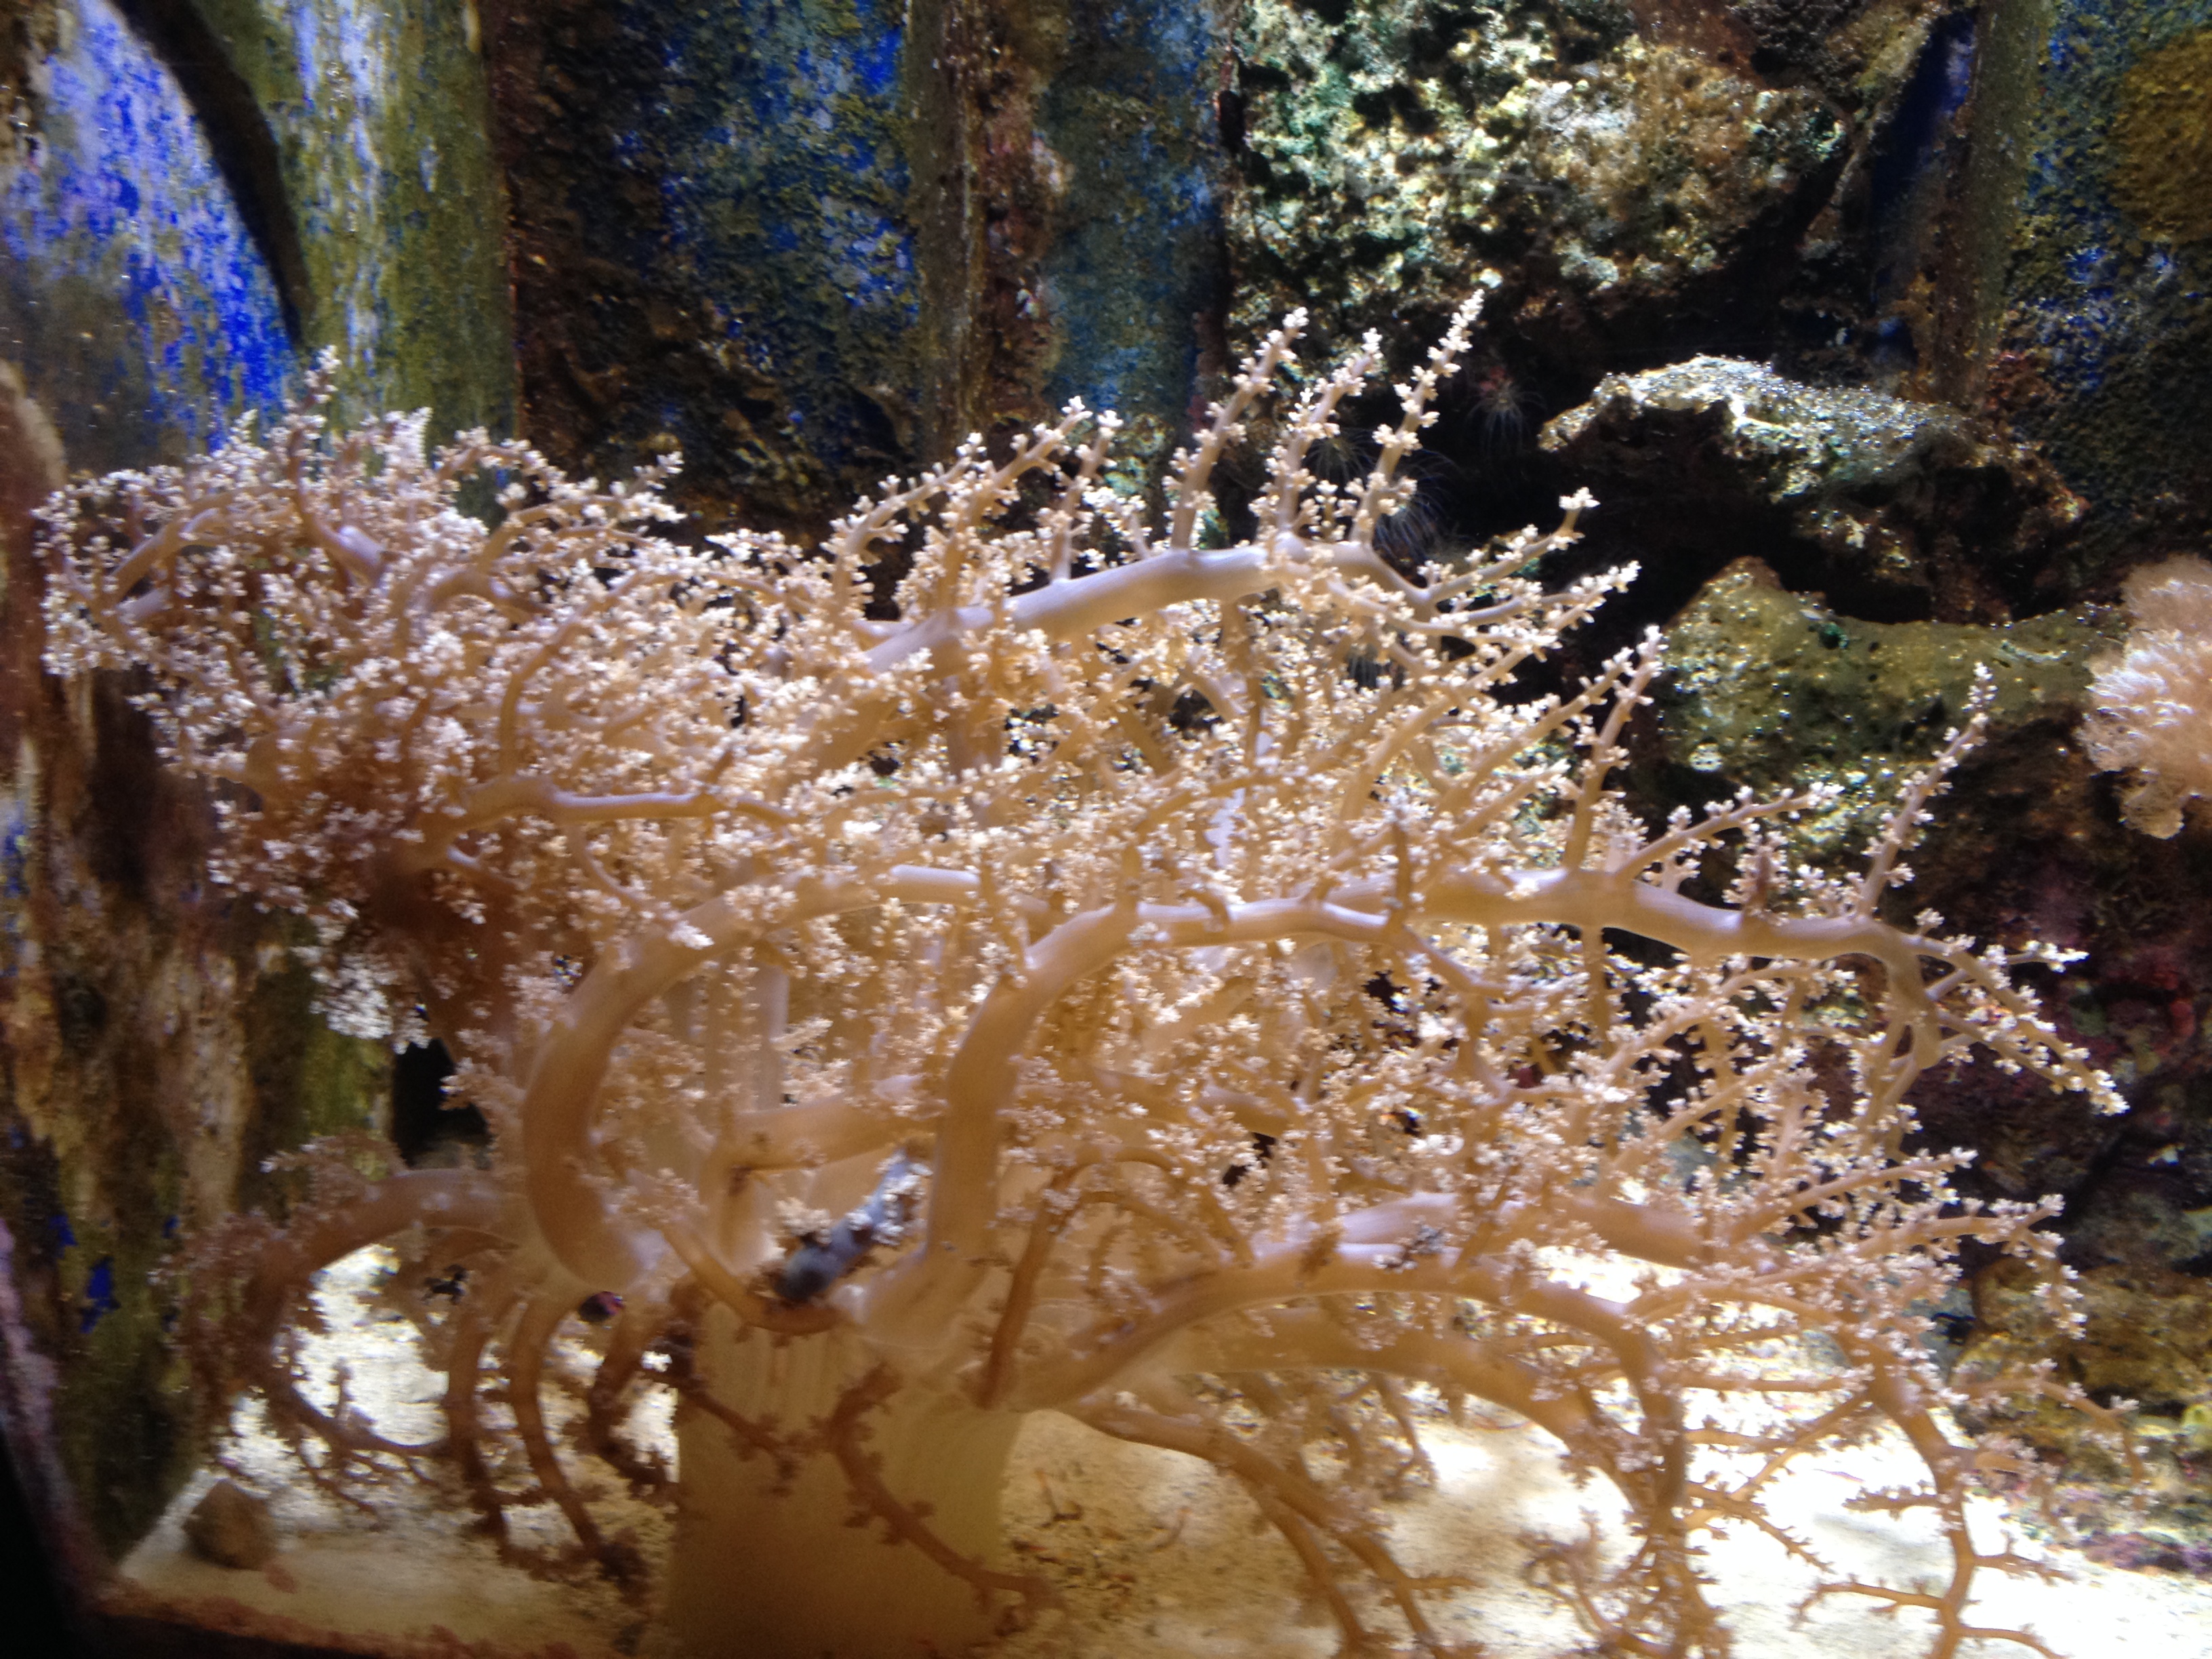 喜欢          引用到评论  海洋博物馆的珊瑚树